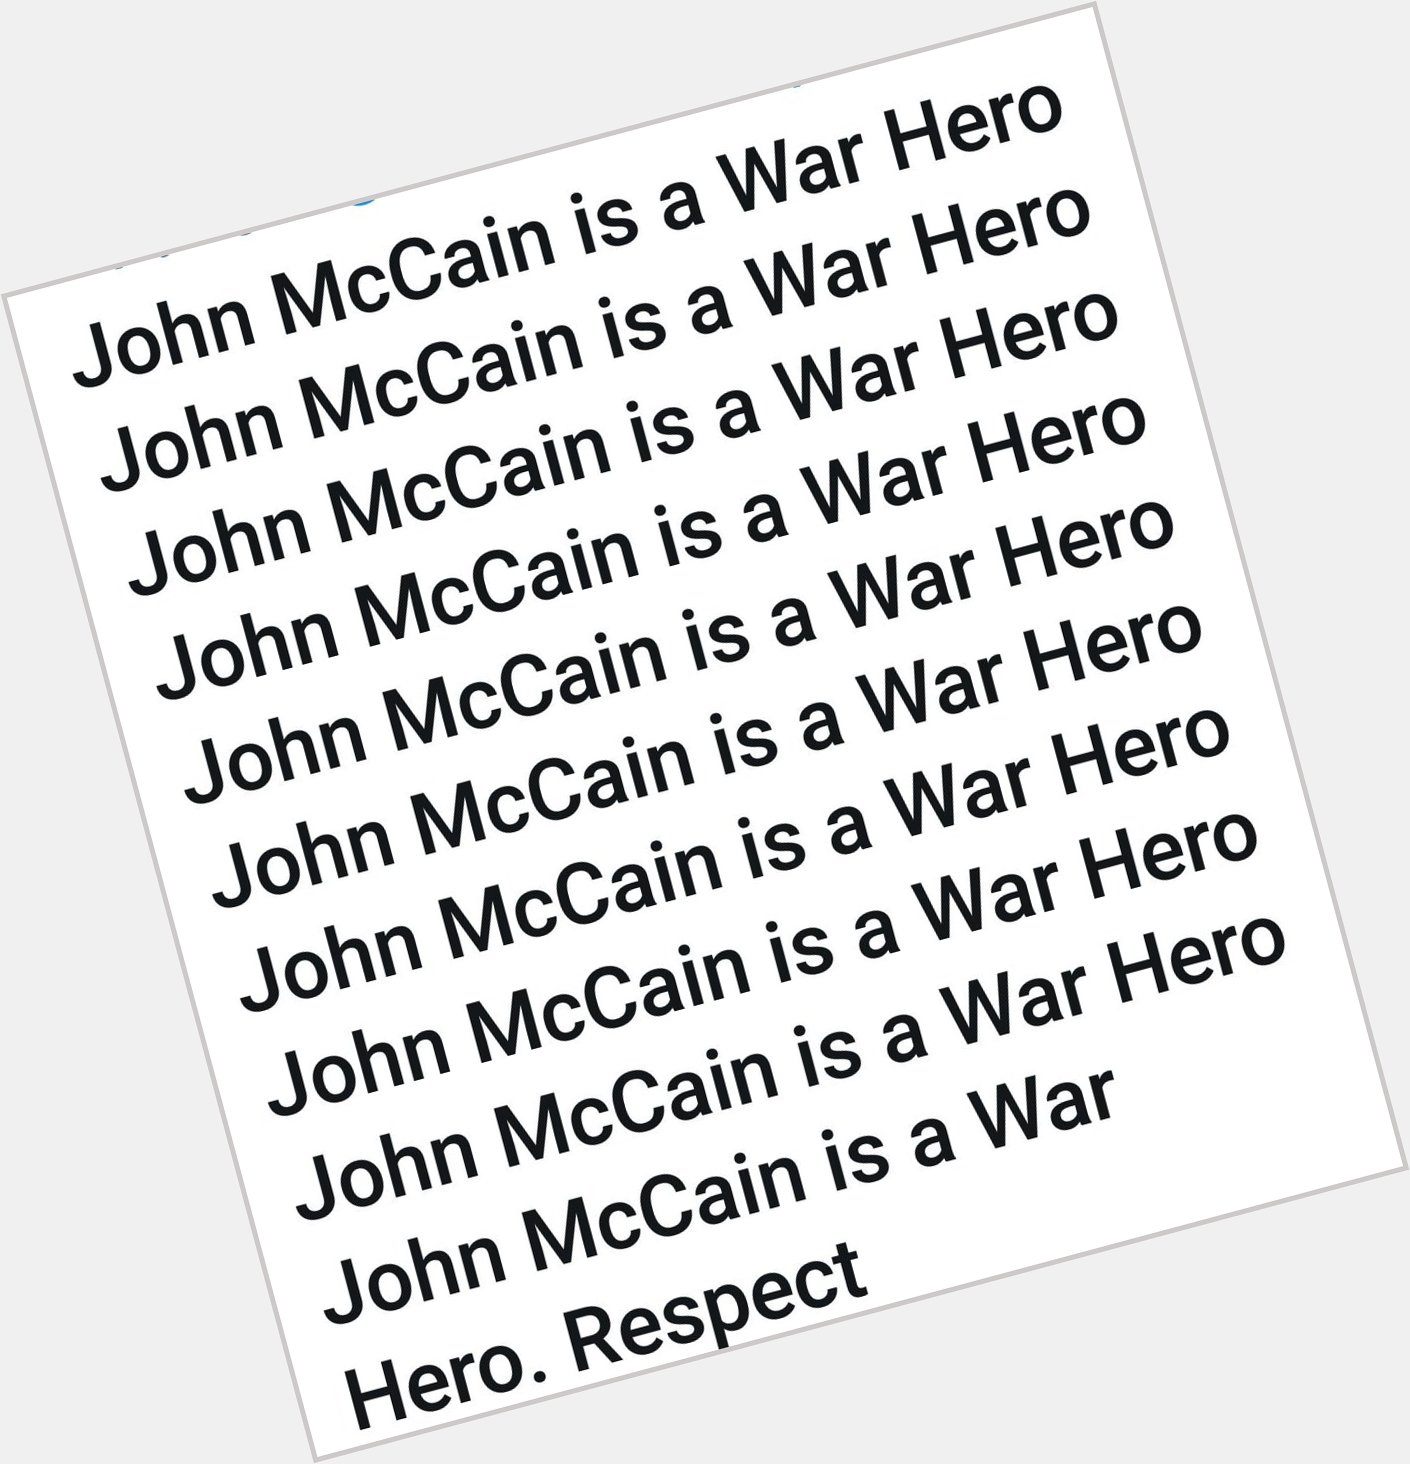  Happy birthday John McCain!!!     